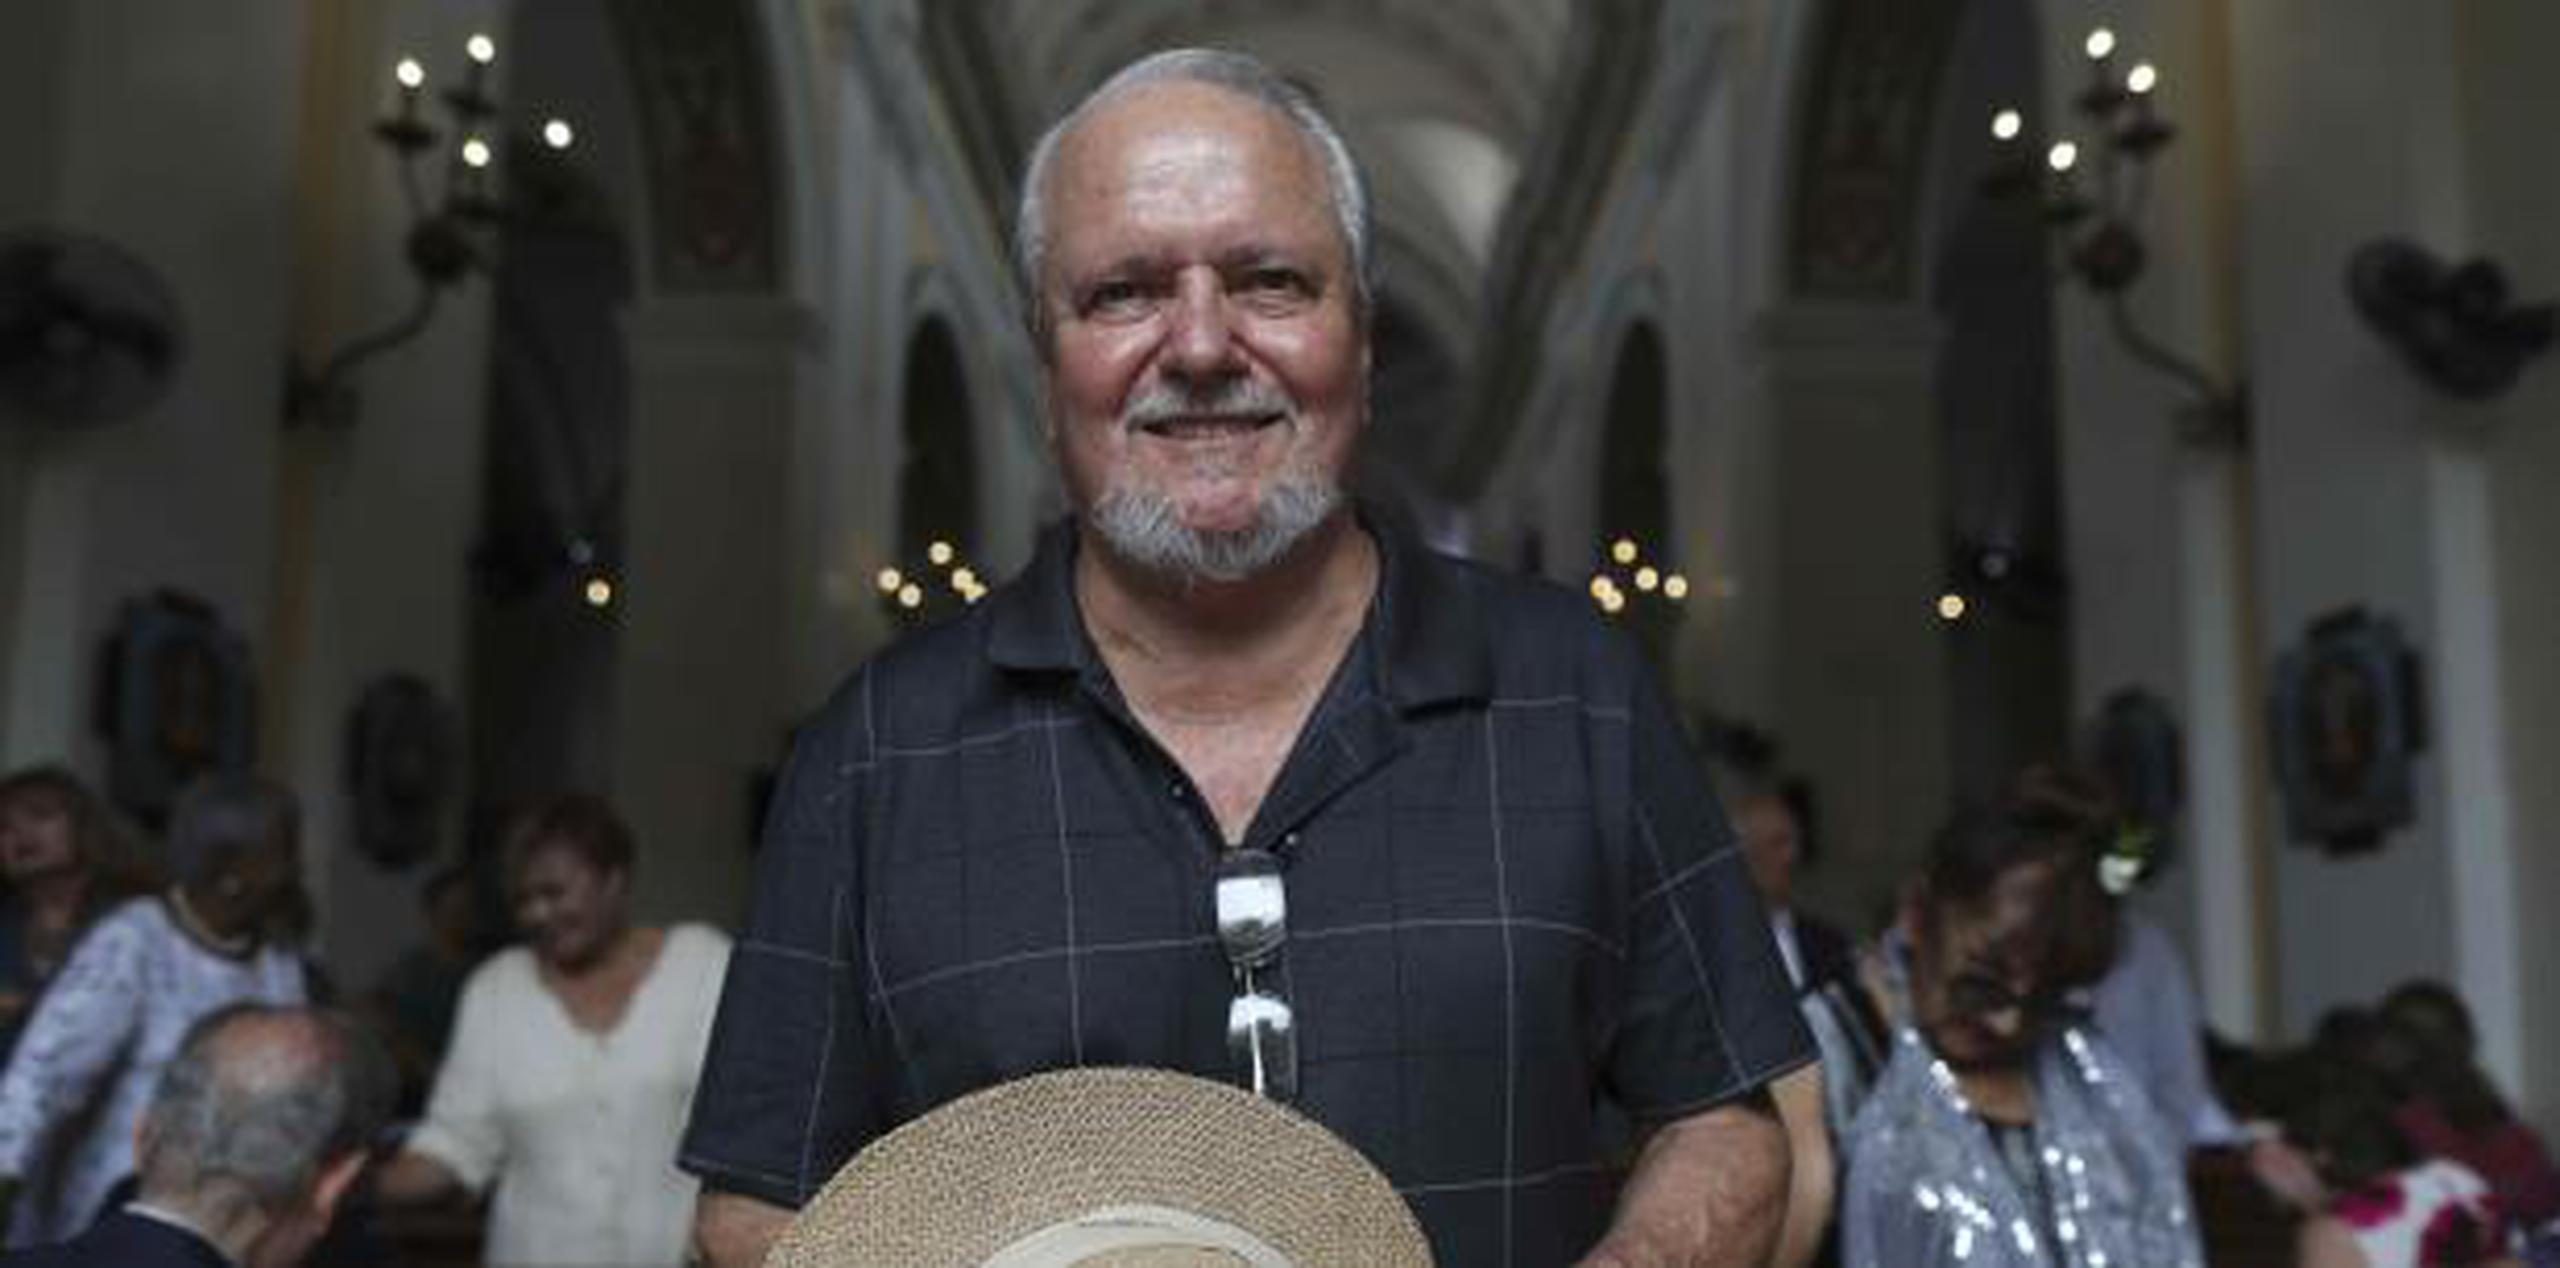 Gaspar Gómez Marginat, quien fue su fotógrafo por más de dos décadas. (Vanessa Serra Díaz vanessa.serra@gfrmedia.com)